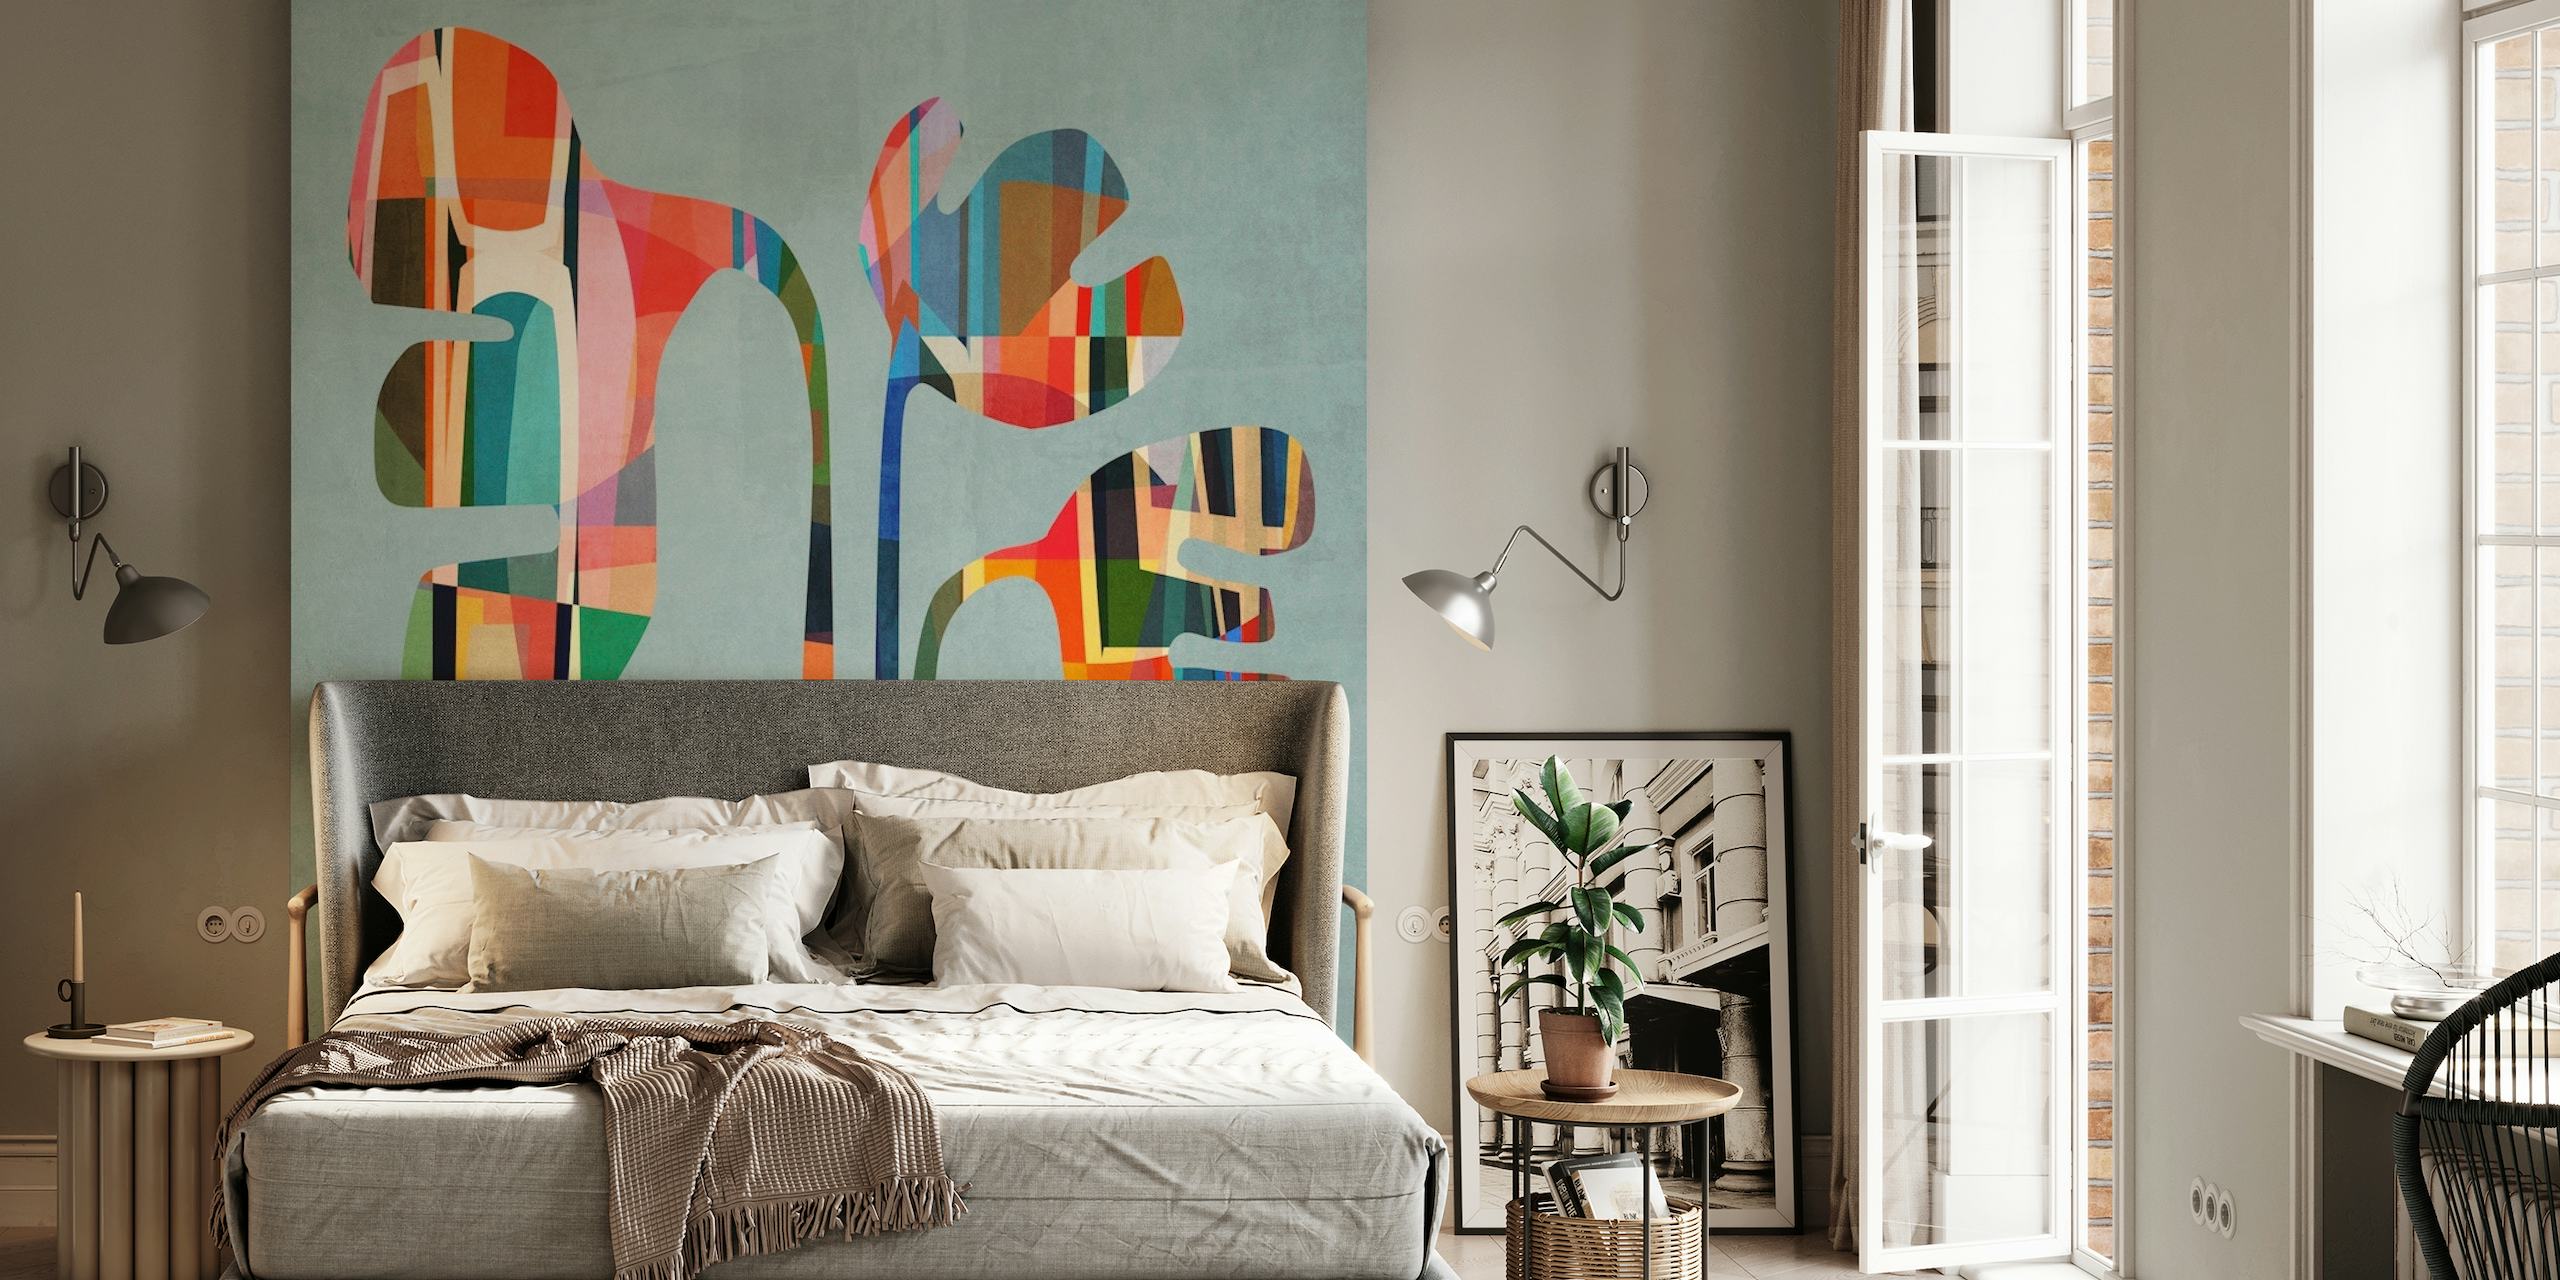 Diseño mural colorido abstracto Joy Flower 2 sobre fondo apagado